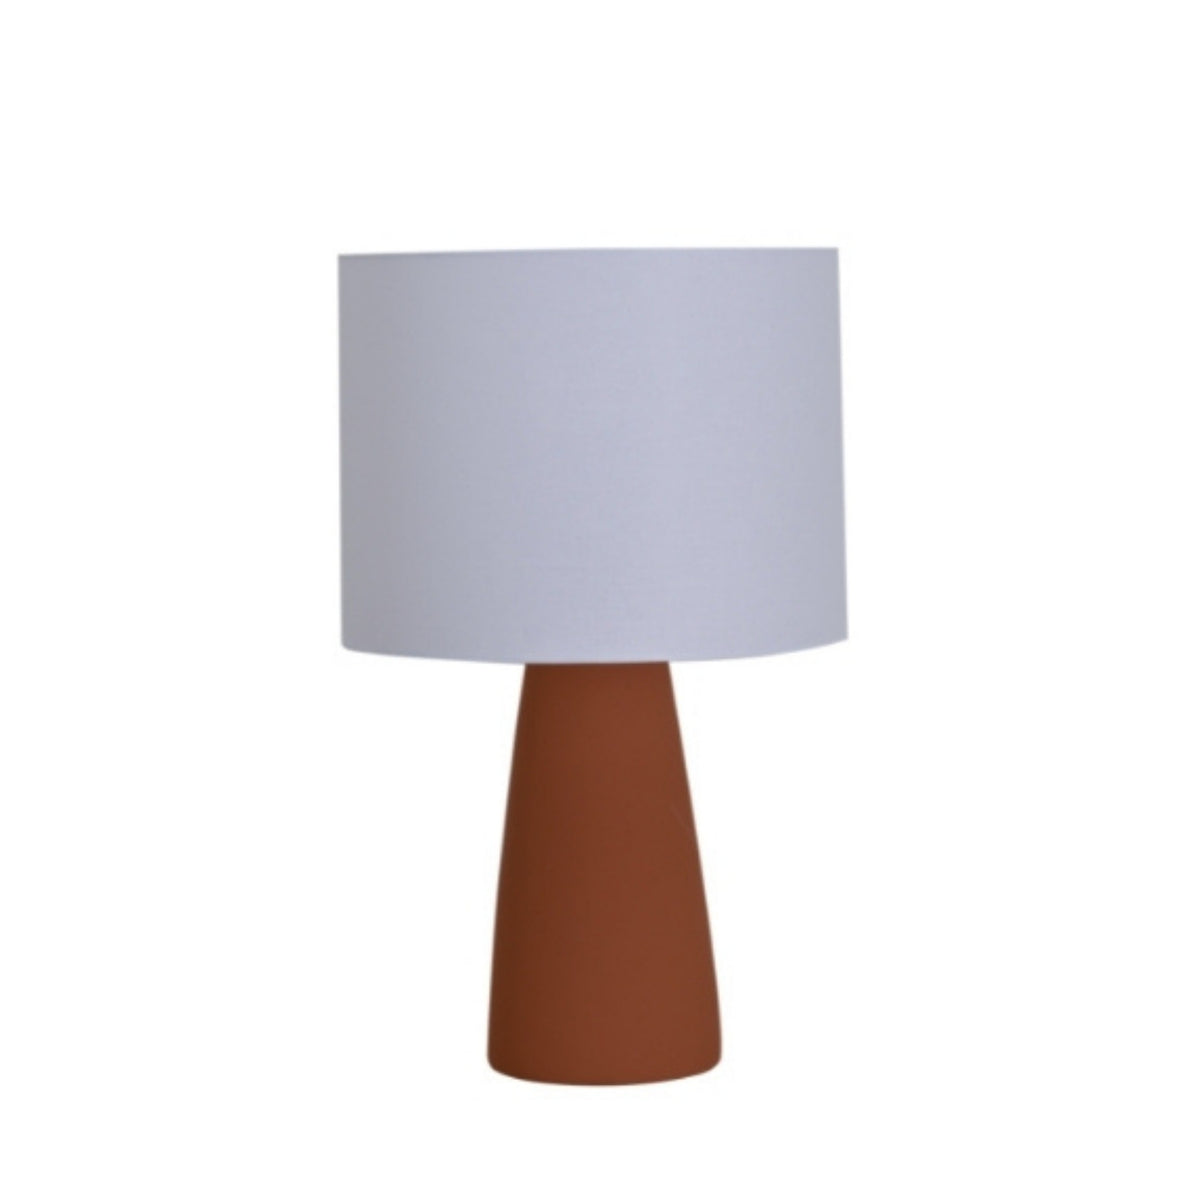 Geo Contemporary - Ingá Table Lamp - AB238 - Ingá Table Lamp | Geo ContemporaryOrange